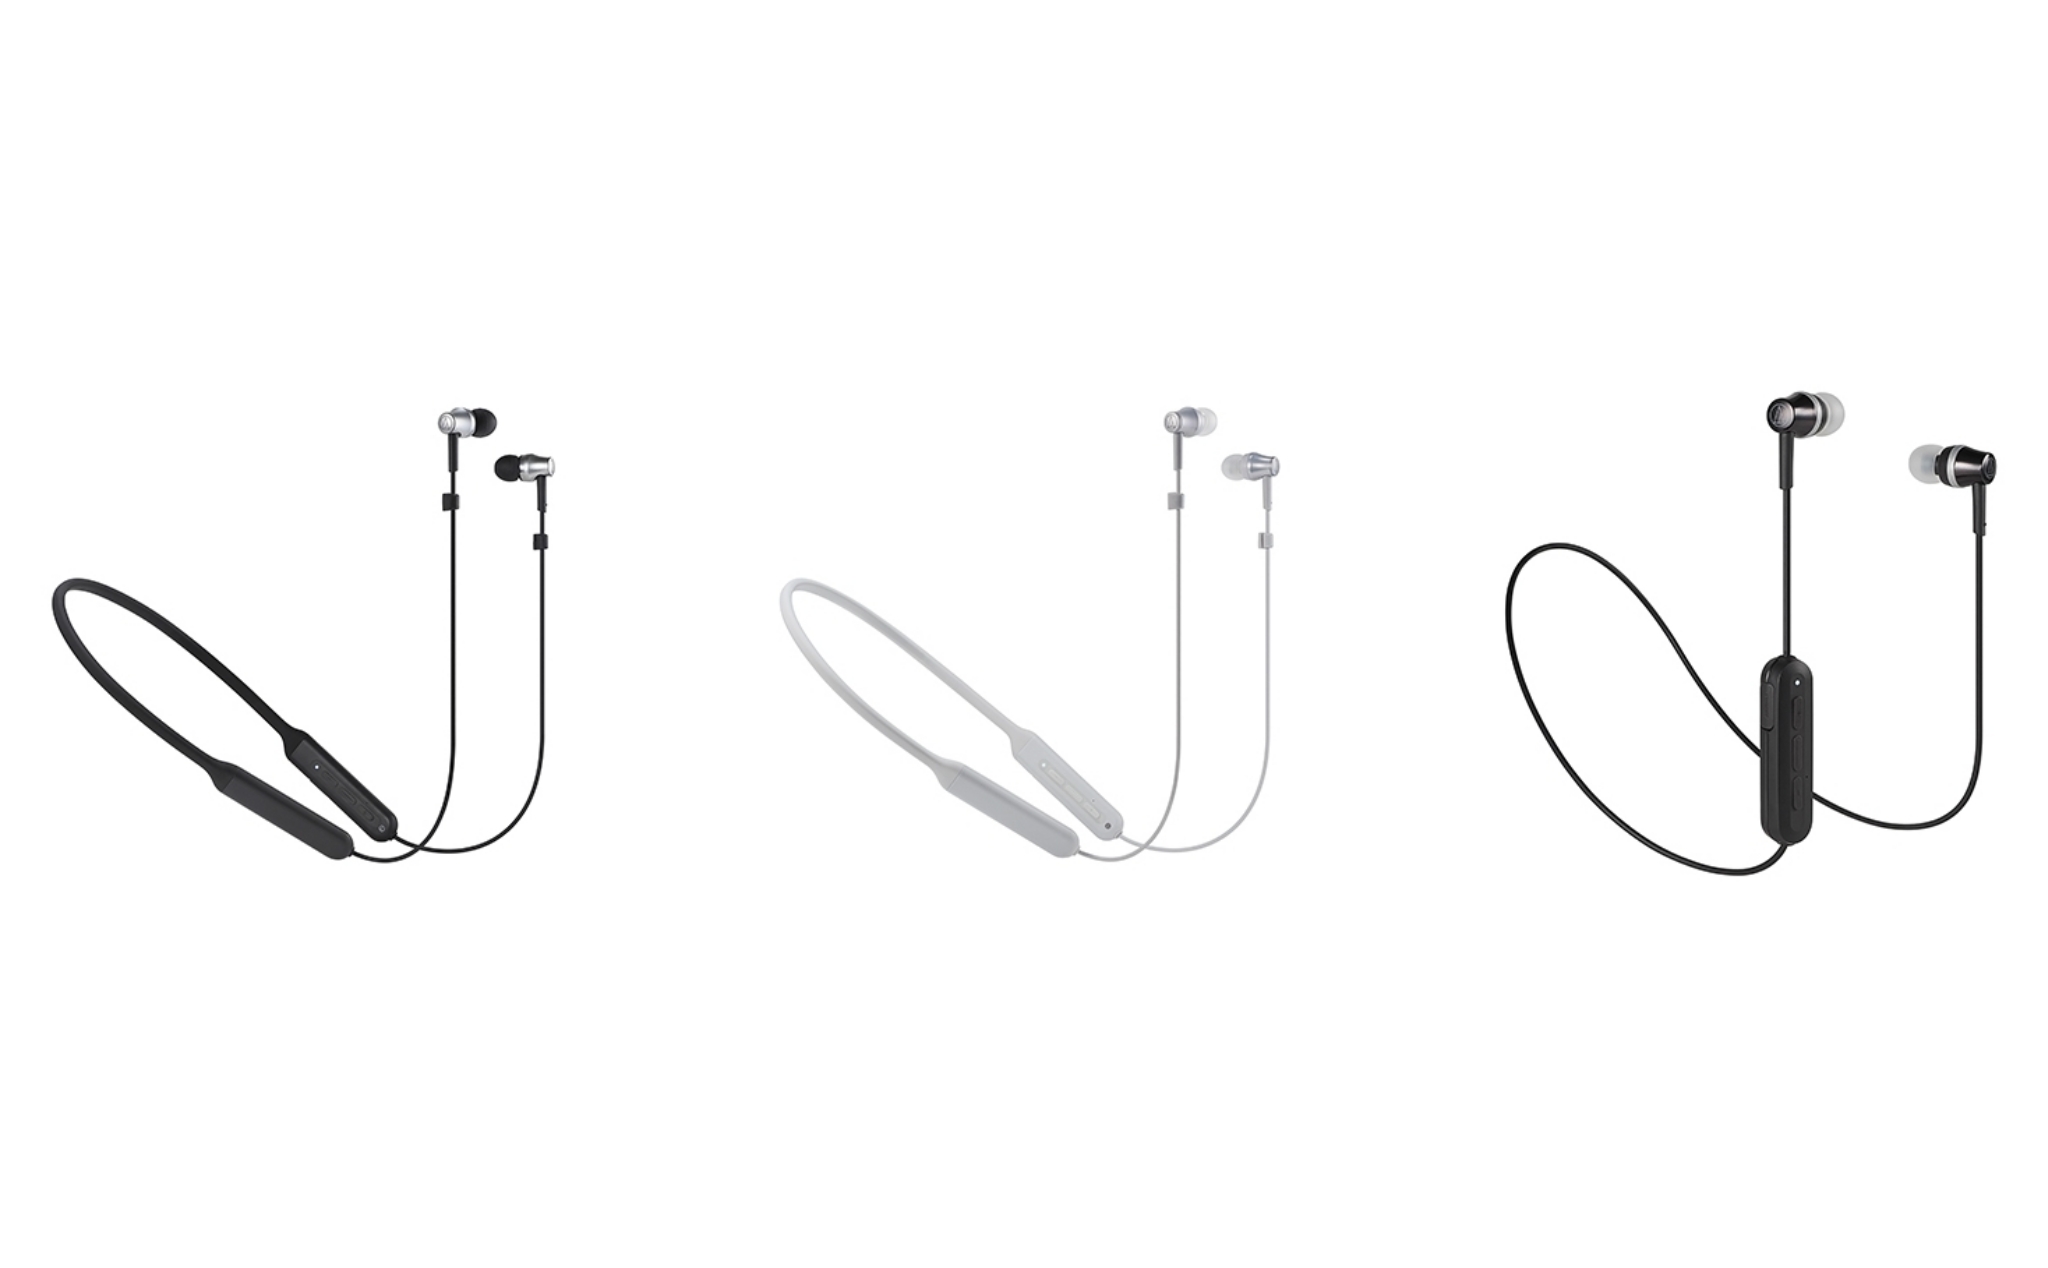 Audio-Technica ra mắt 3 mẫu tai nghe Bluetooth inear tầm trung, thiết kế đơn giản, giá từ 1,3tr